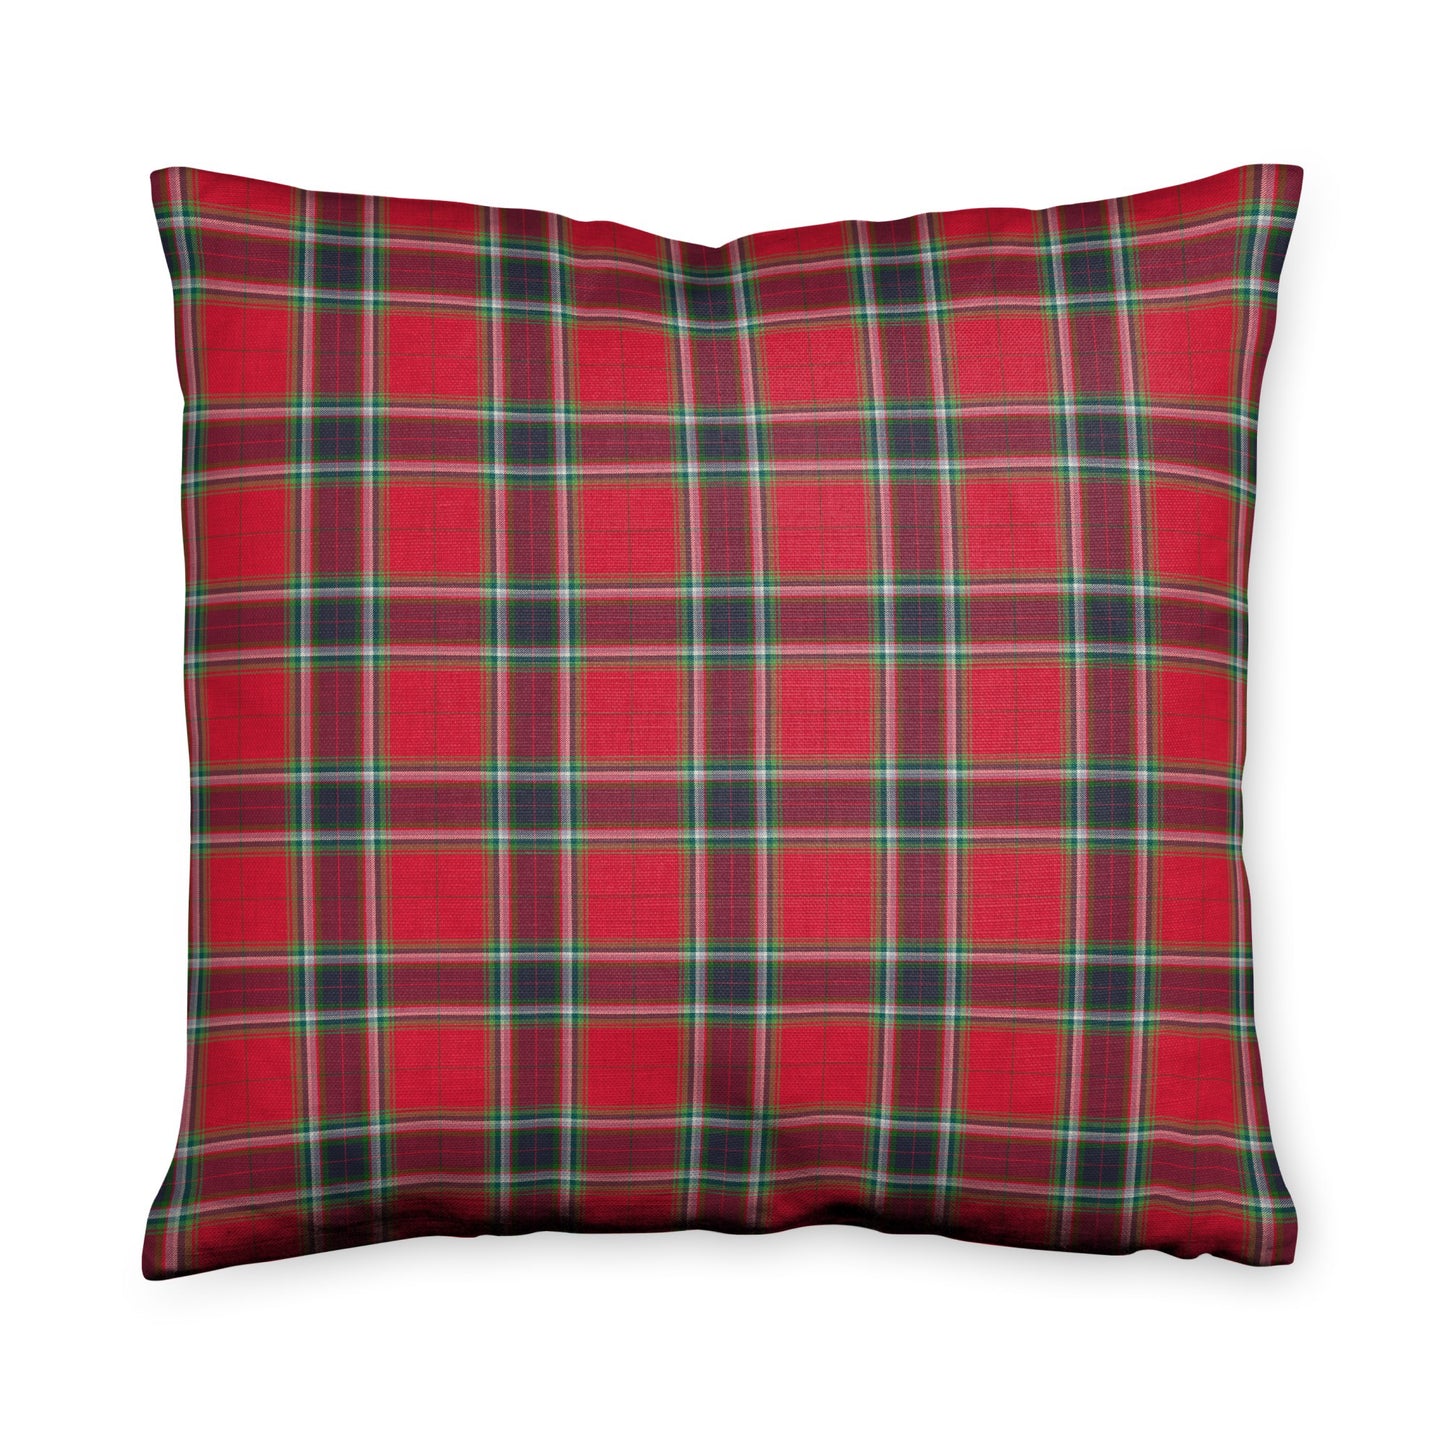 Gullane Plaid Red Throw Pillow